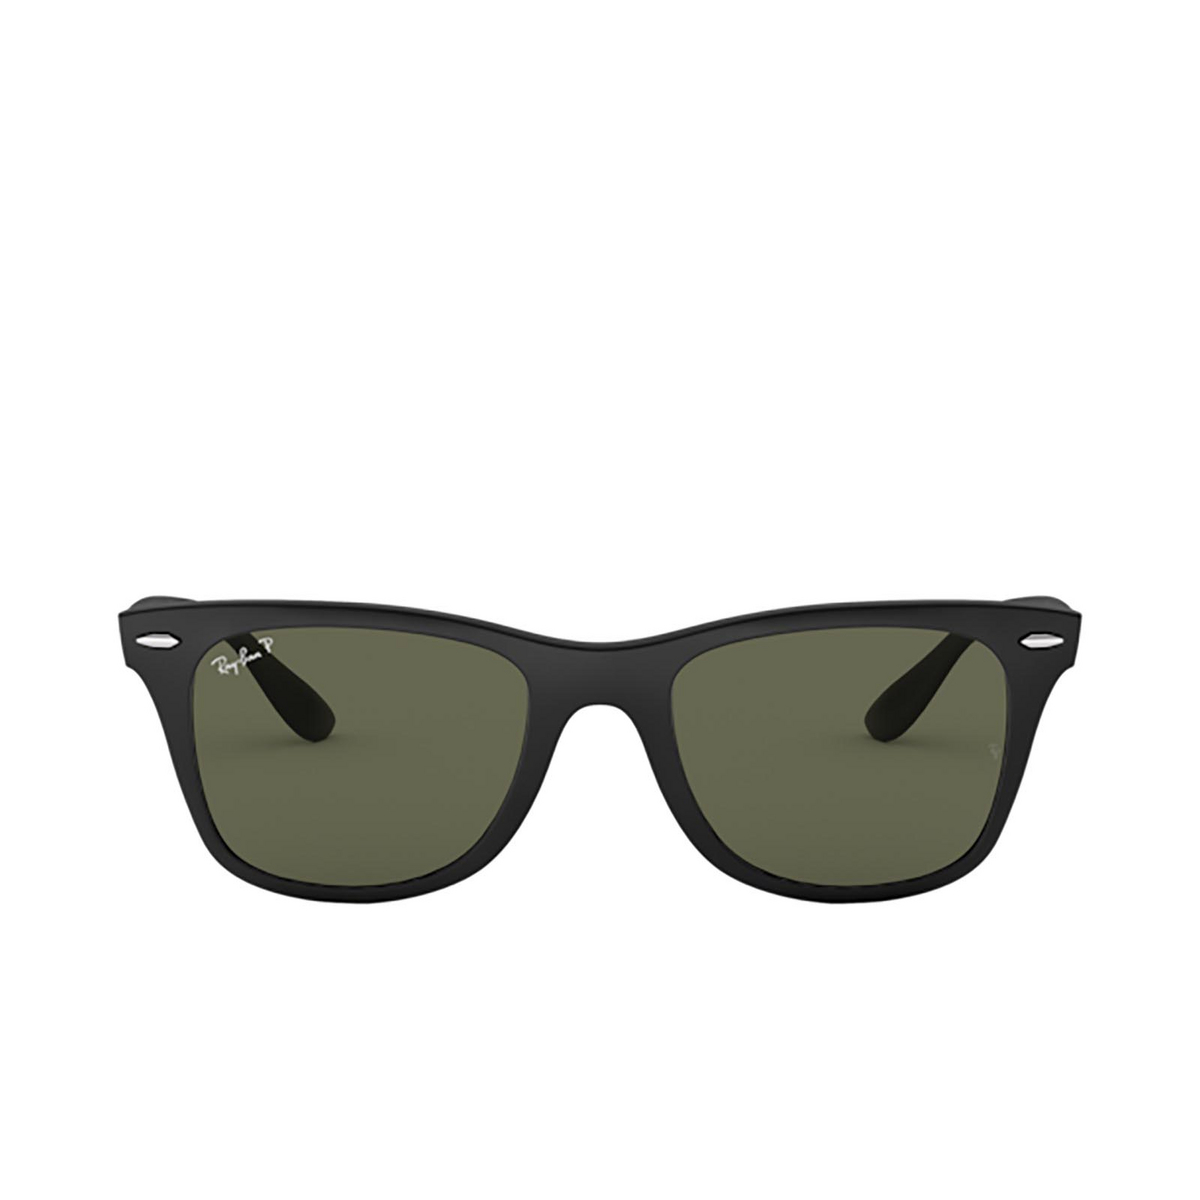 Ray-Ban WAYFARER LITEFORCE Sunglasses 601S9A MATTE BLACK - front view